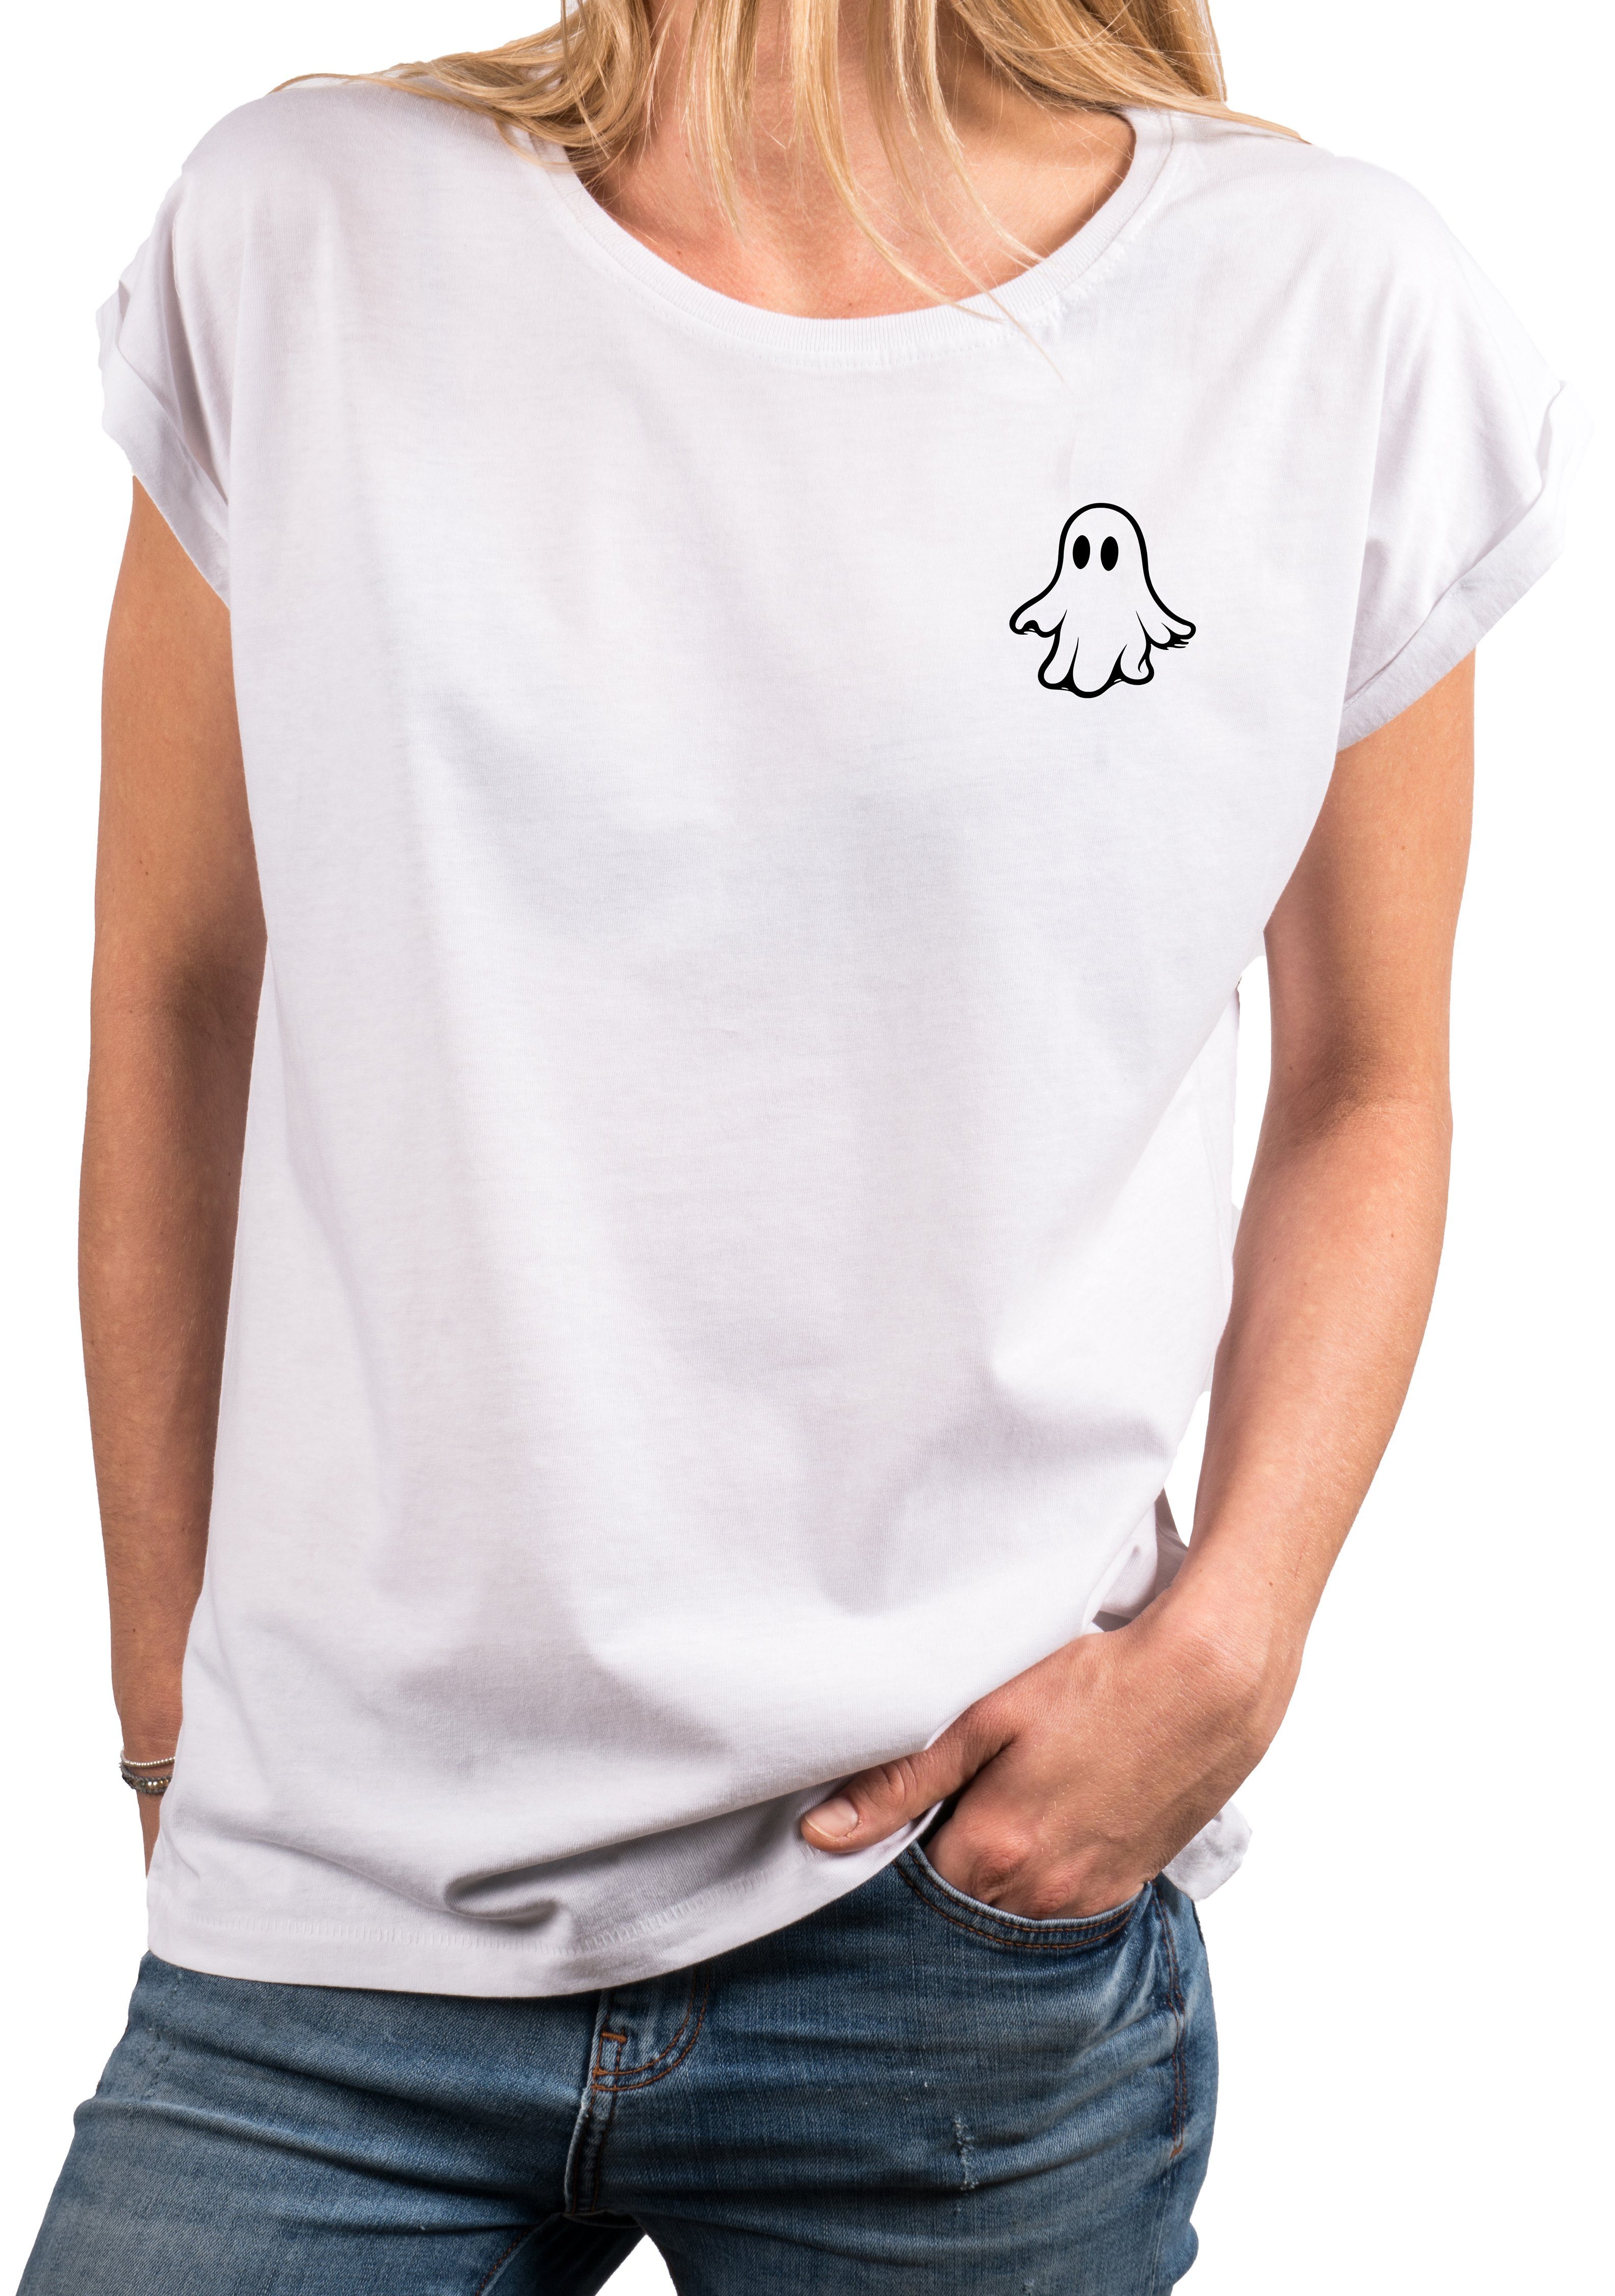 MAKAYA Print-Shirt Damen Kurzarm Top Geist cool modisch ausgefallen lustig witzig frech Ghost, Gespenst, Geister